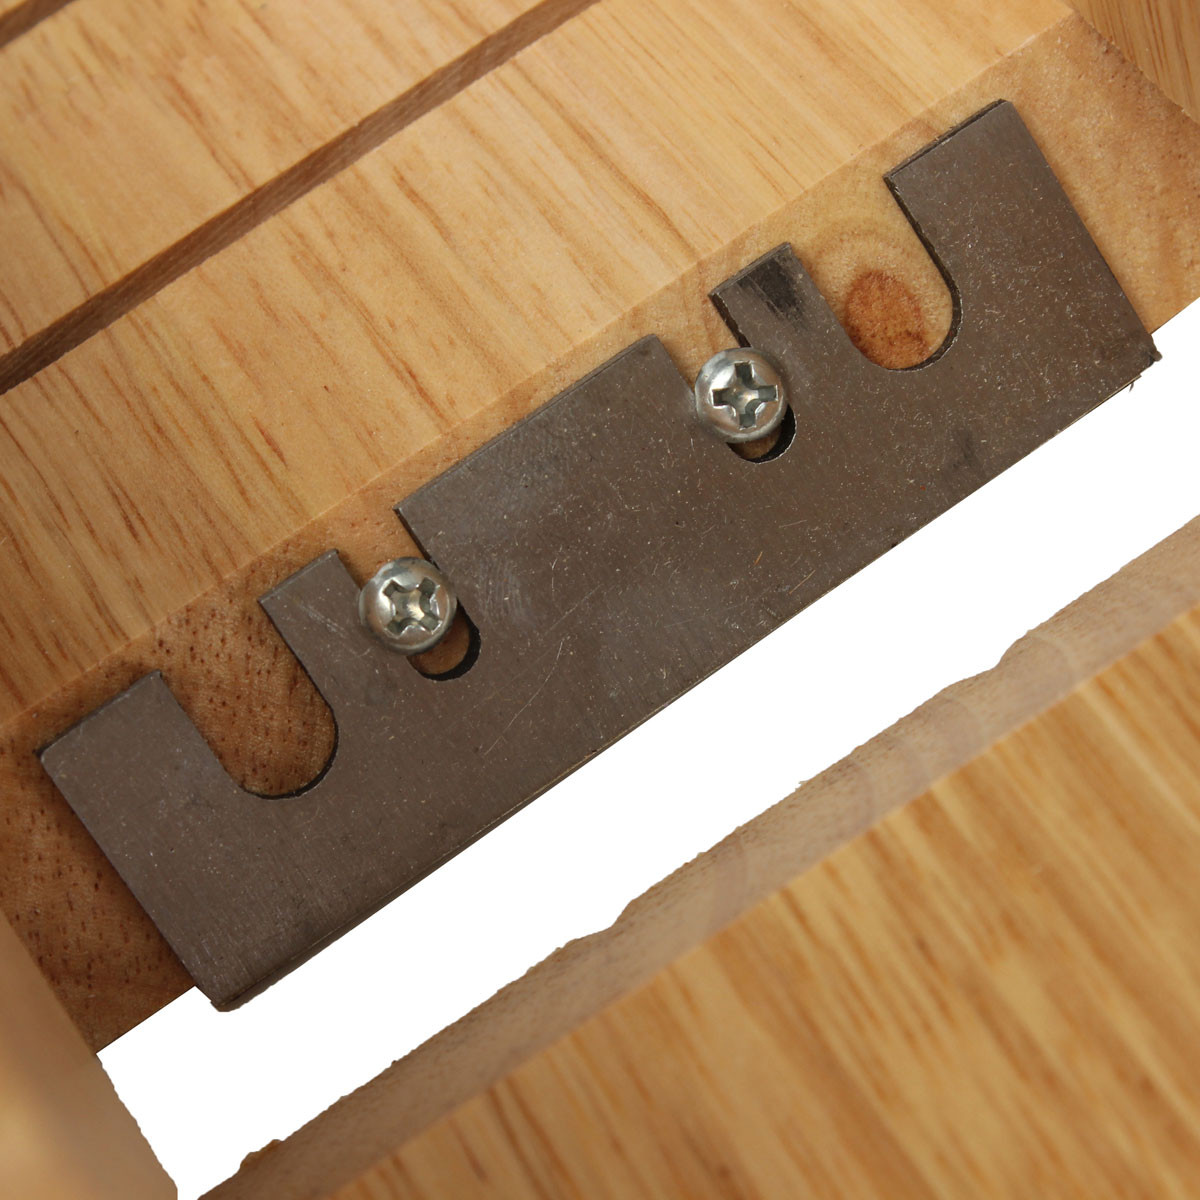 Soap-Mold-Loaf-Cutter-Adjustable-Wood-and-Beveler-Planer-Cutting-1039889-4